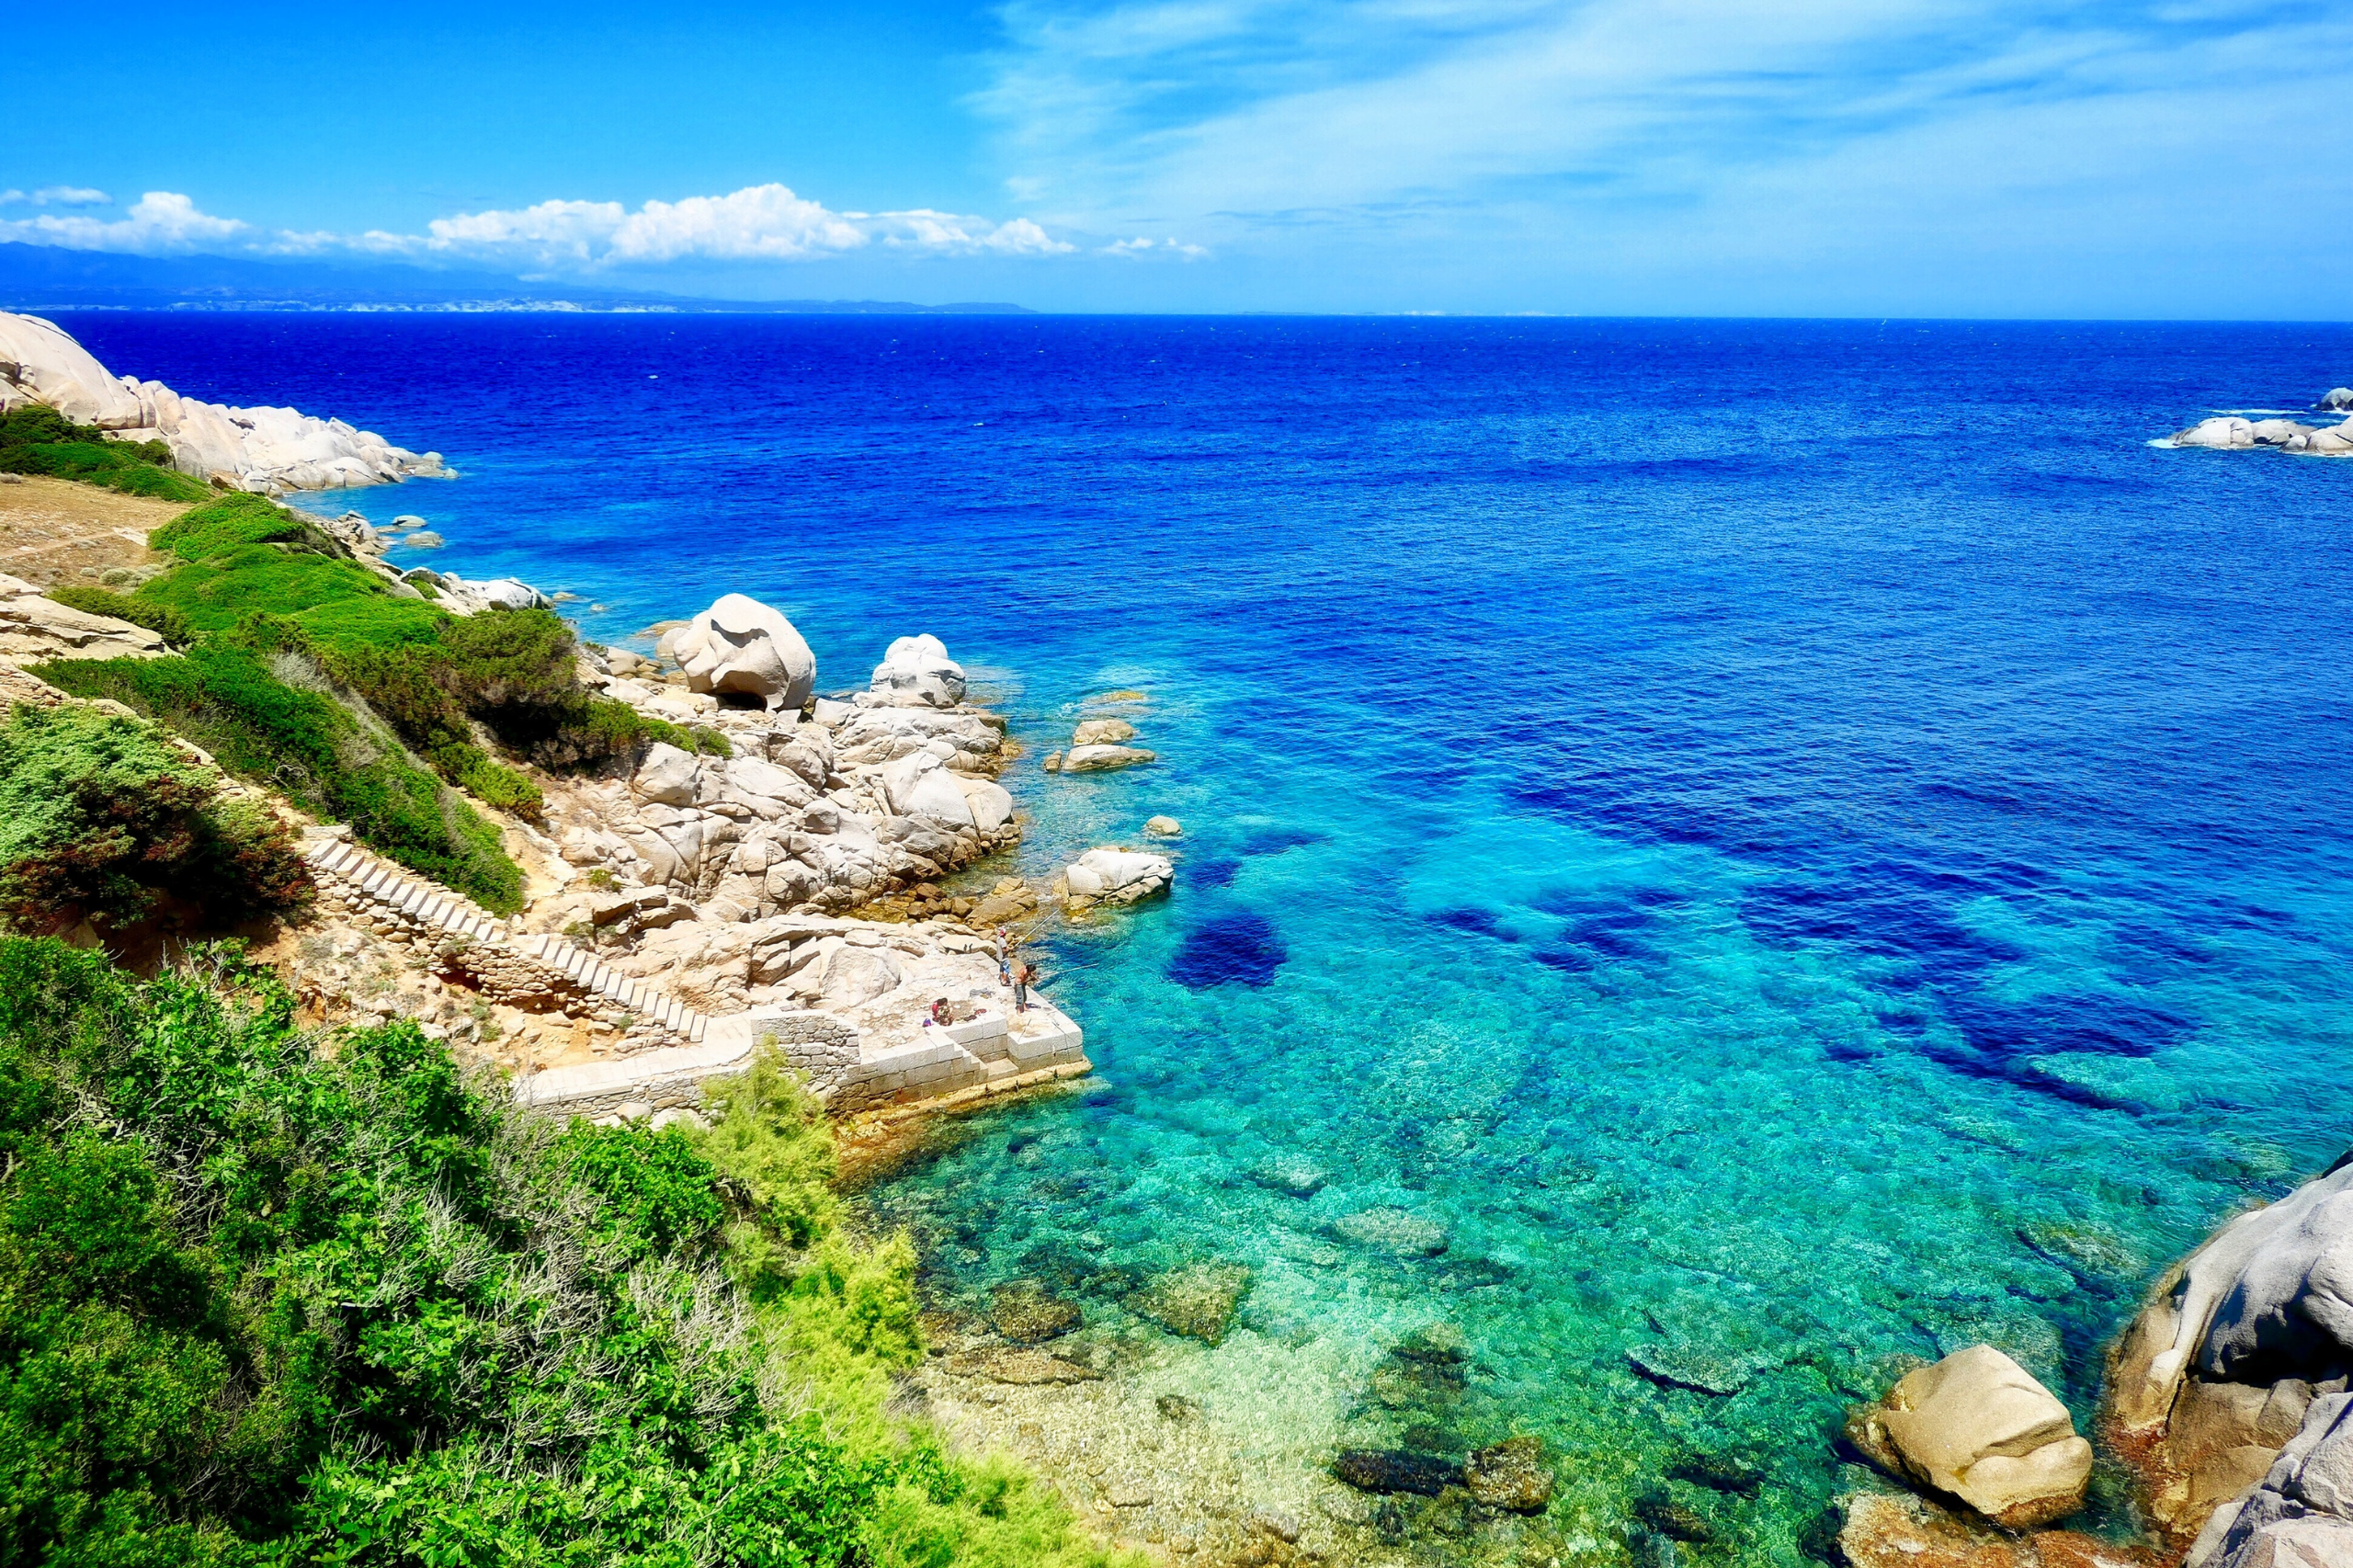  Ce n'est pas pour rien que la Sardaigne est surnommée les Caraïbes de l'Europe : l'eau y est cristalline et le paysage époustouflant. 